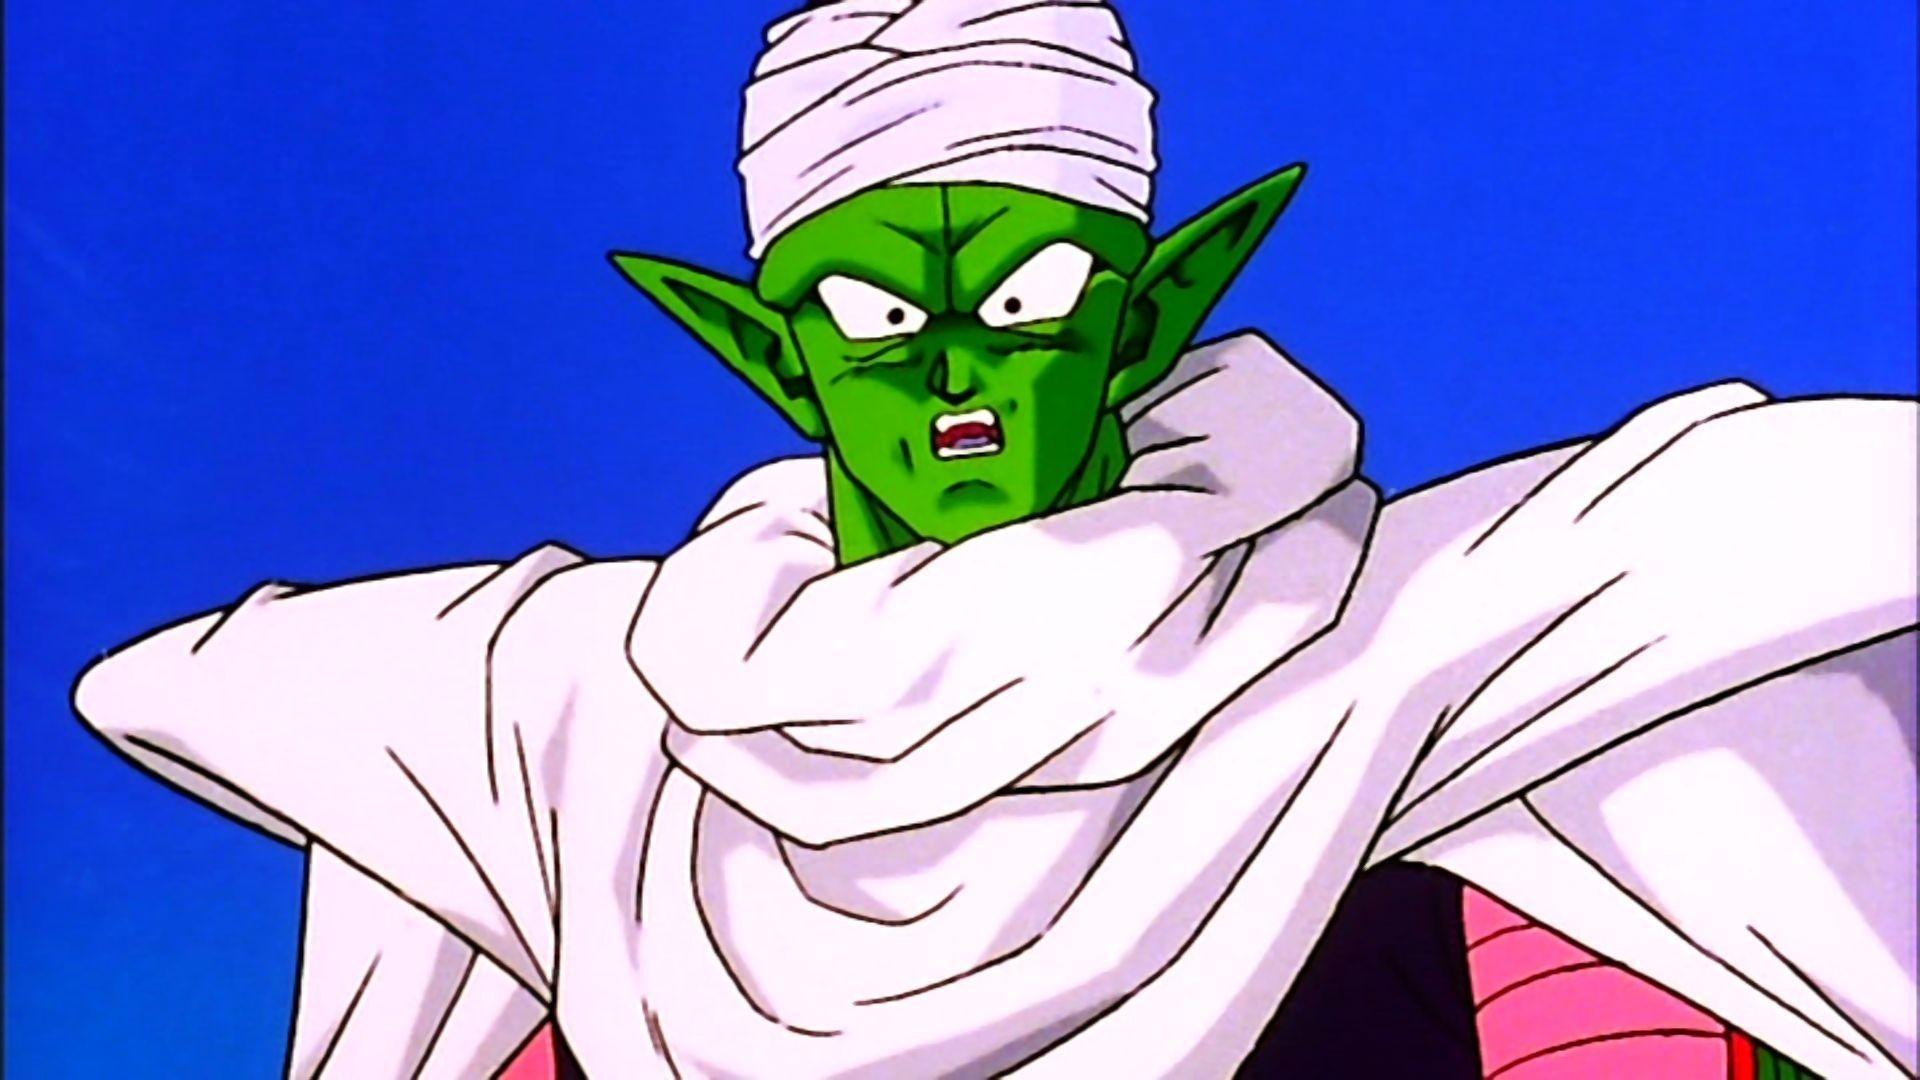 Roteiro de Dragon Ball Z revela o título original do episódio 2 e que Piccolo teria outro nome